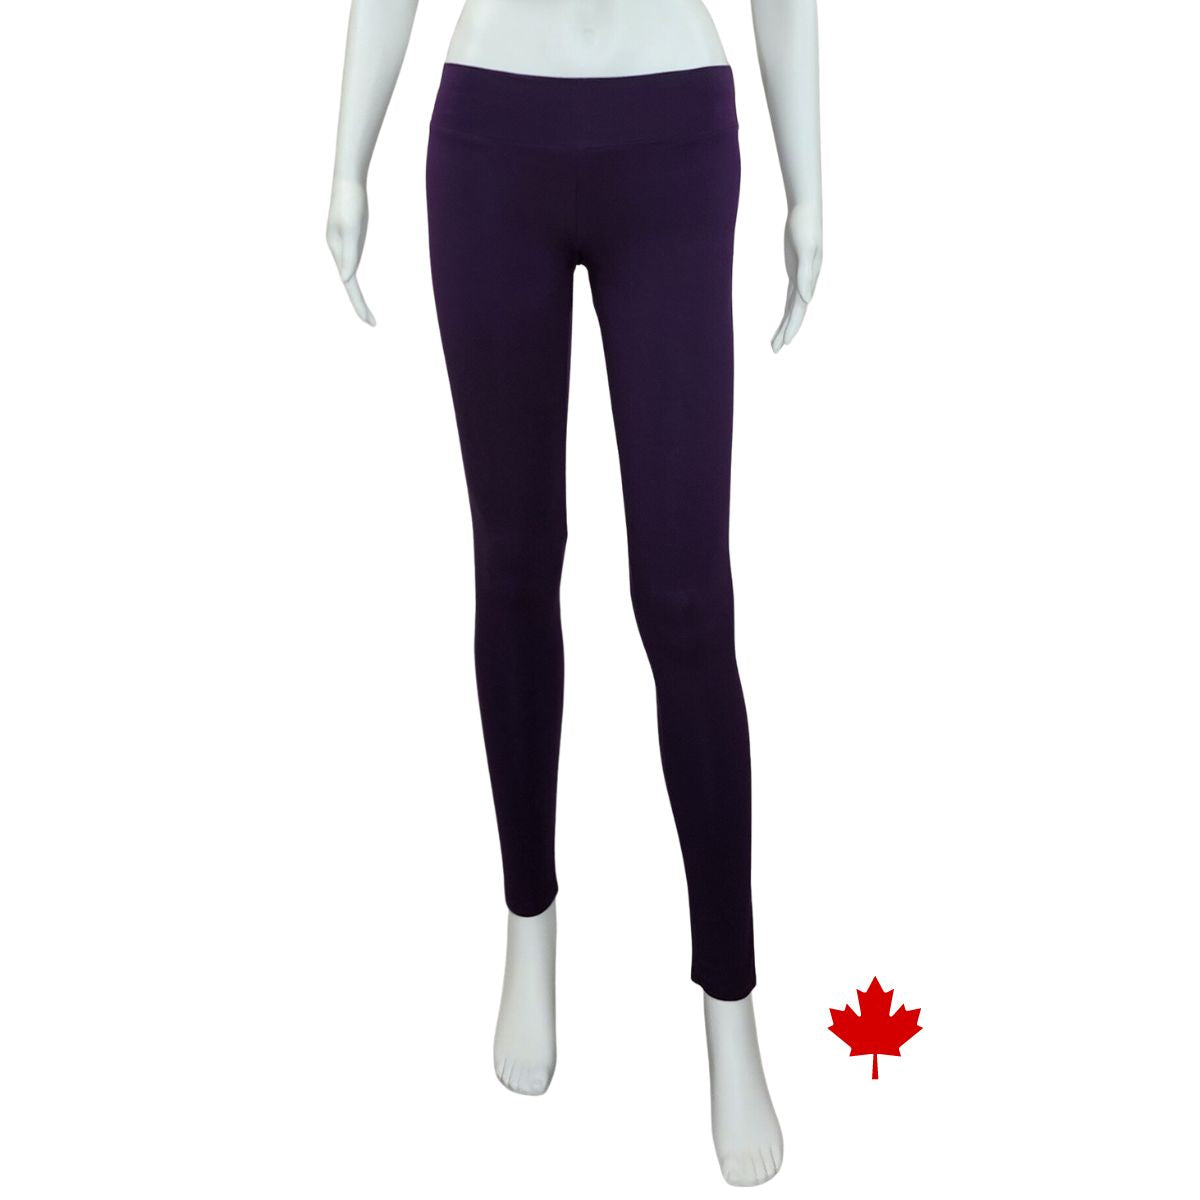 Eve full length yoga leggings plum purple front view of leggings on mannequin